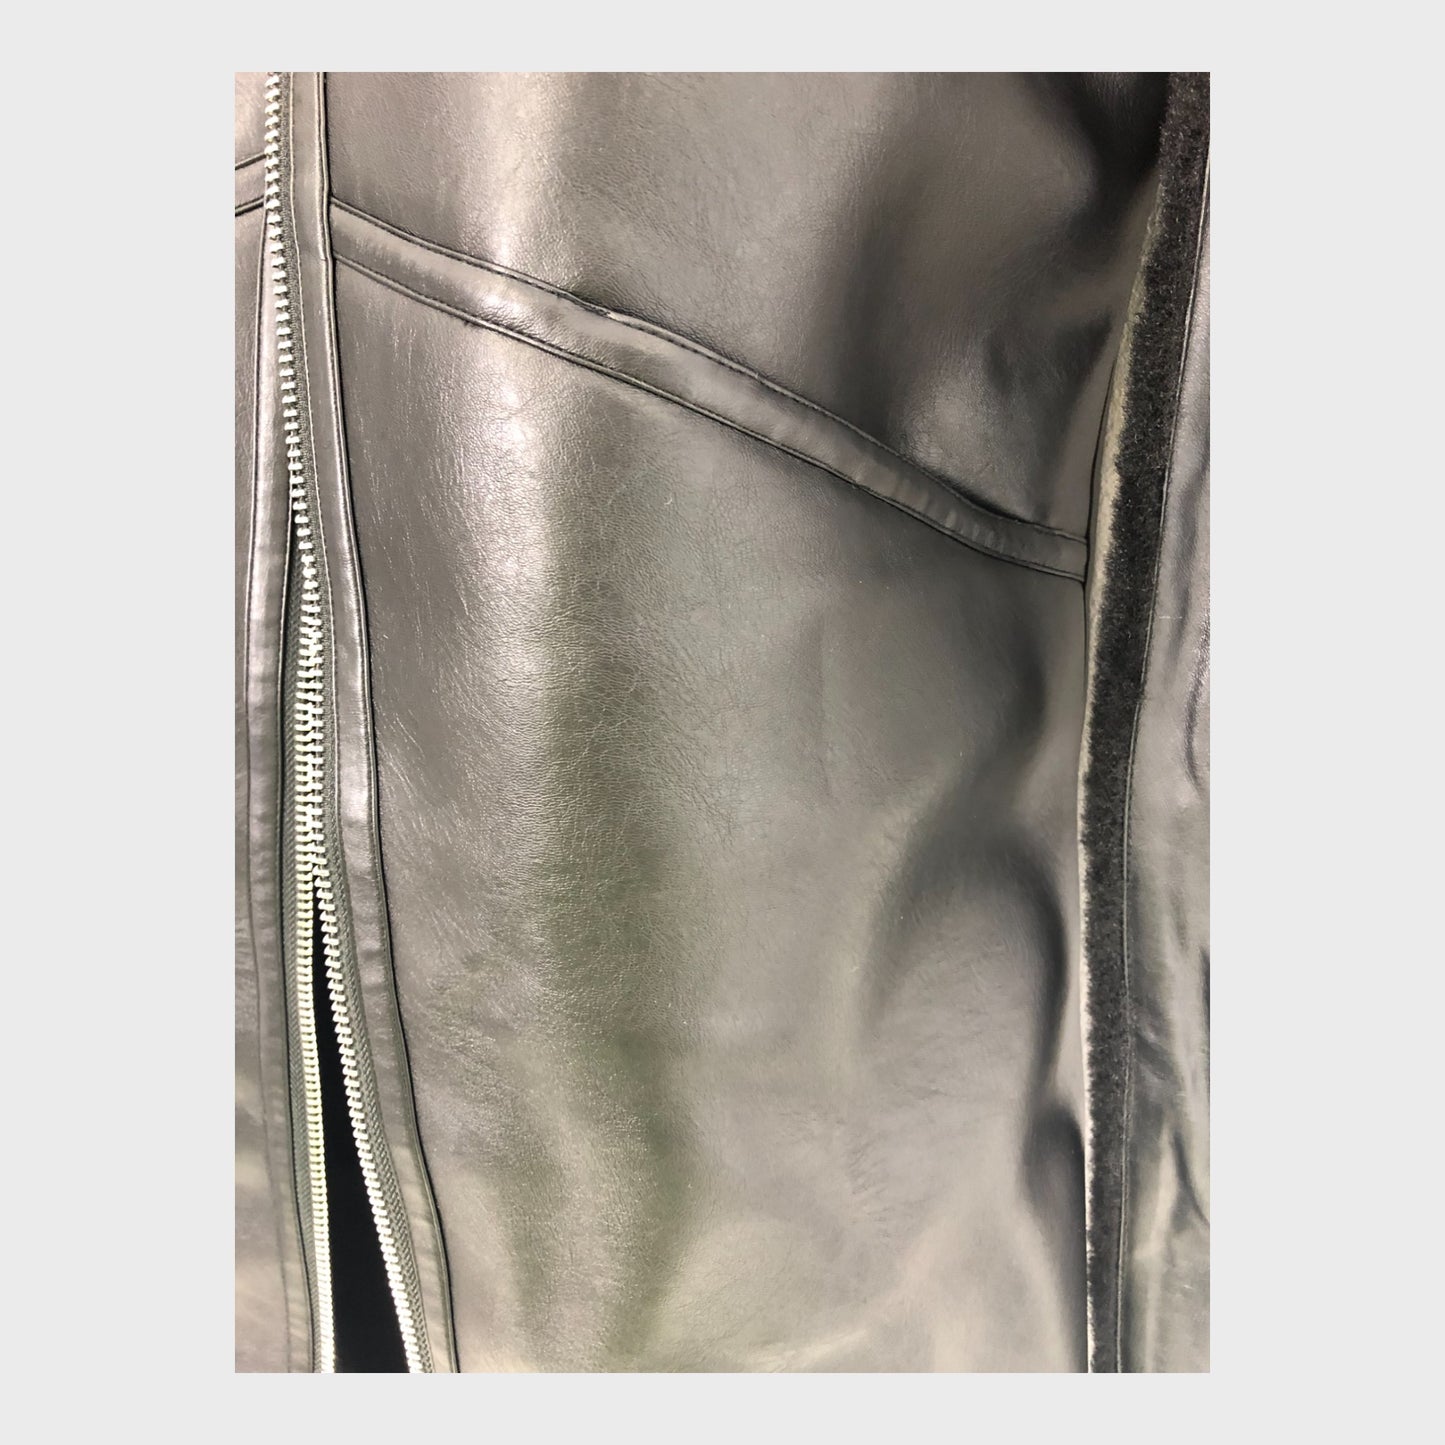 Women's Longline Belted Leather look Coat